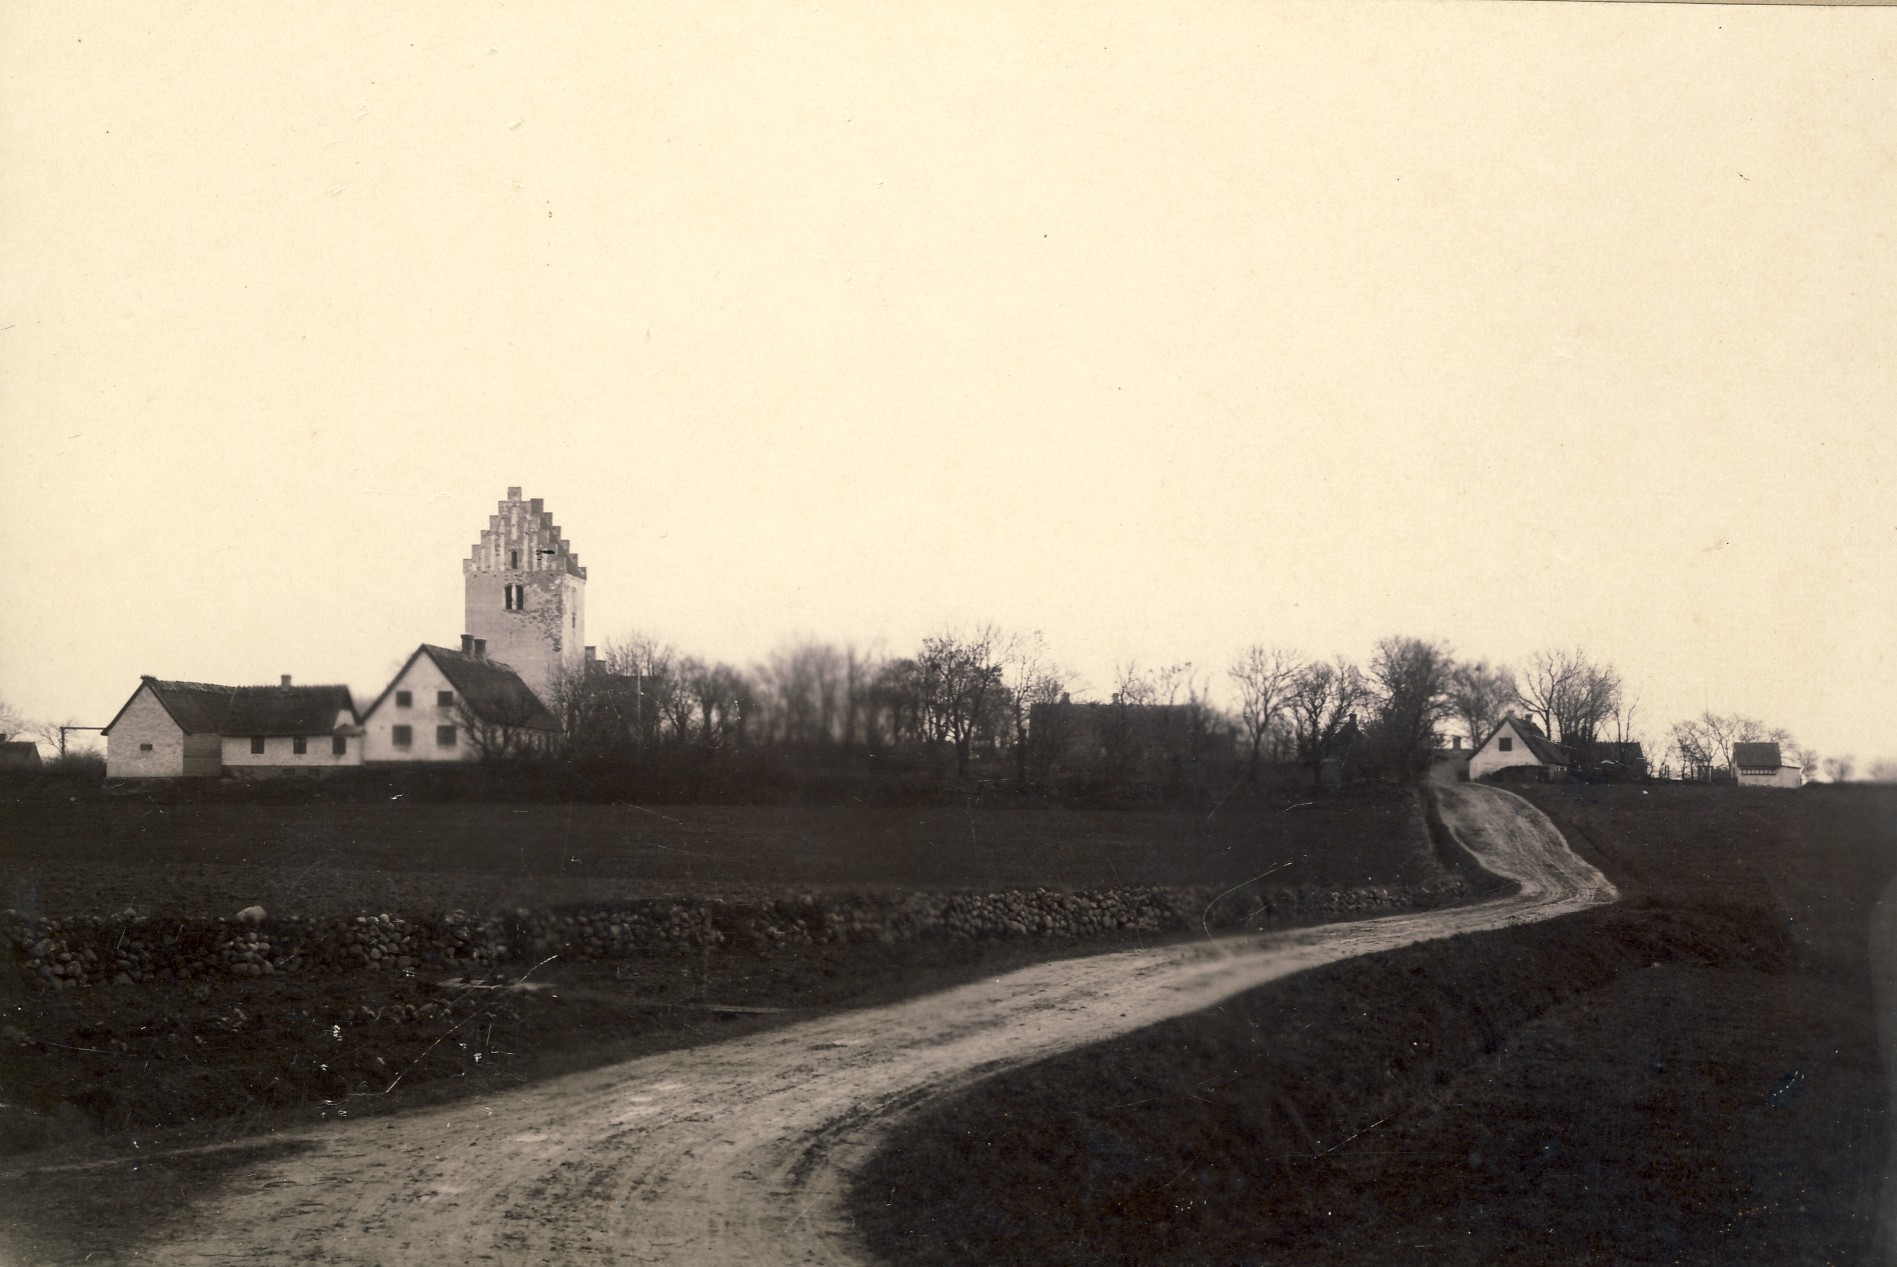 Nr. Asmindrup Kirke omkring år 1900 (B2000)